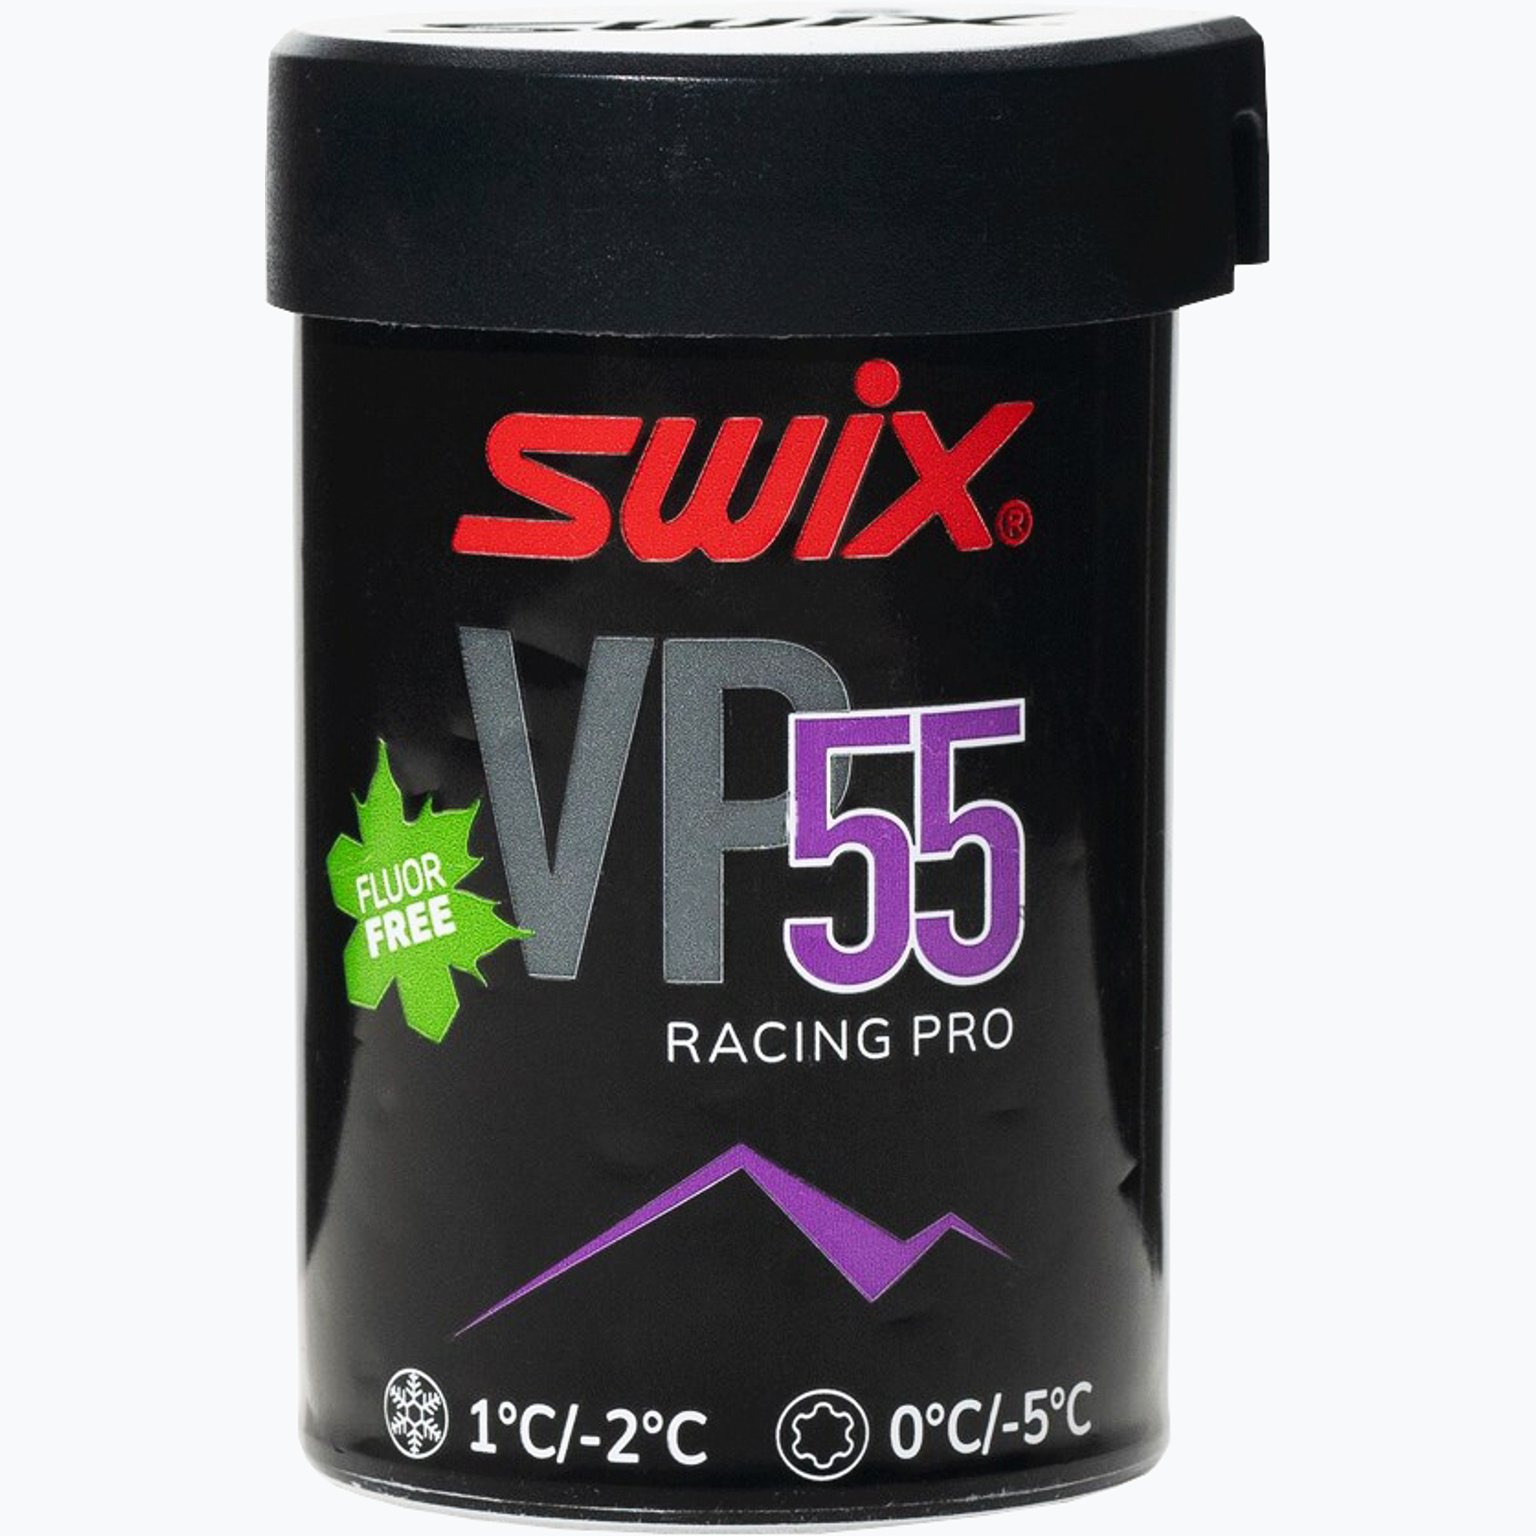 VP55 Pro Violet